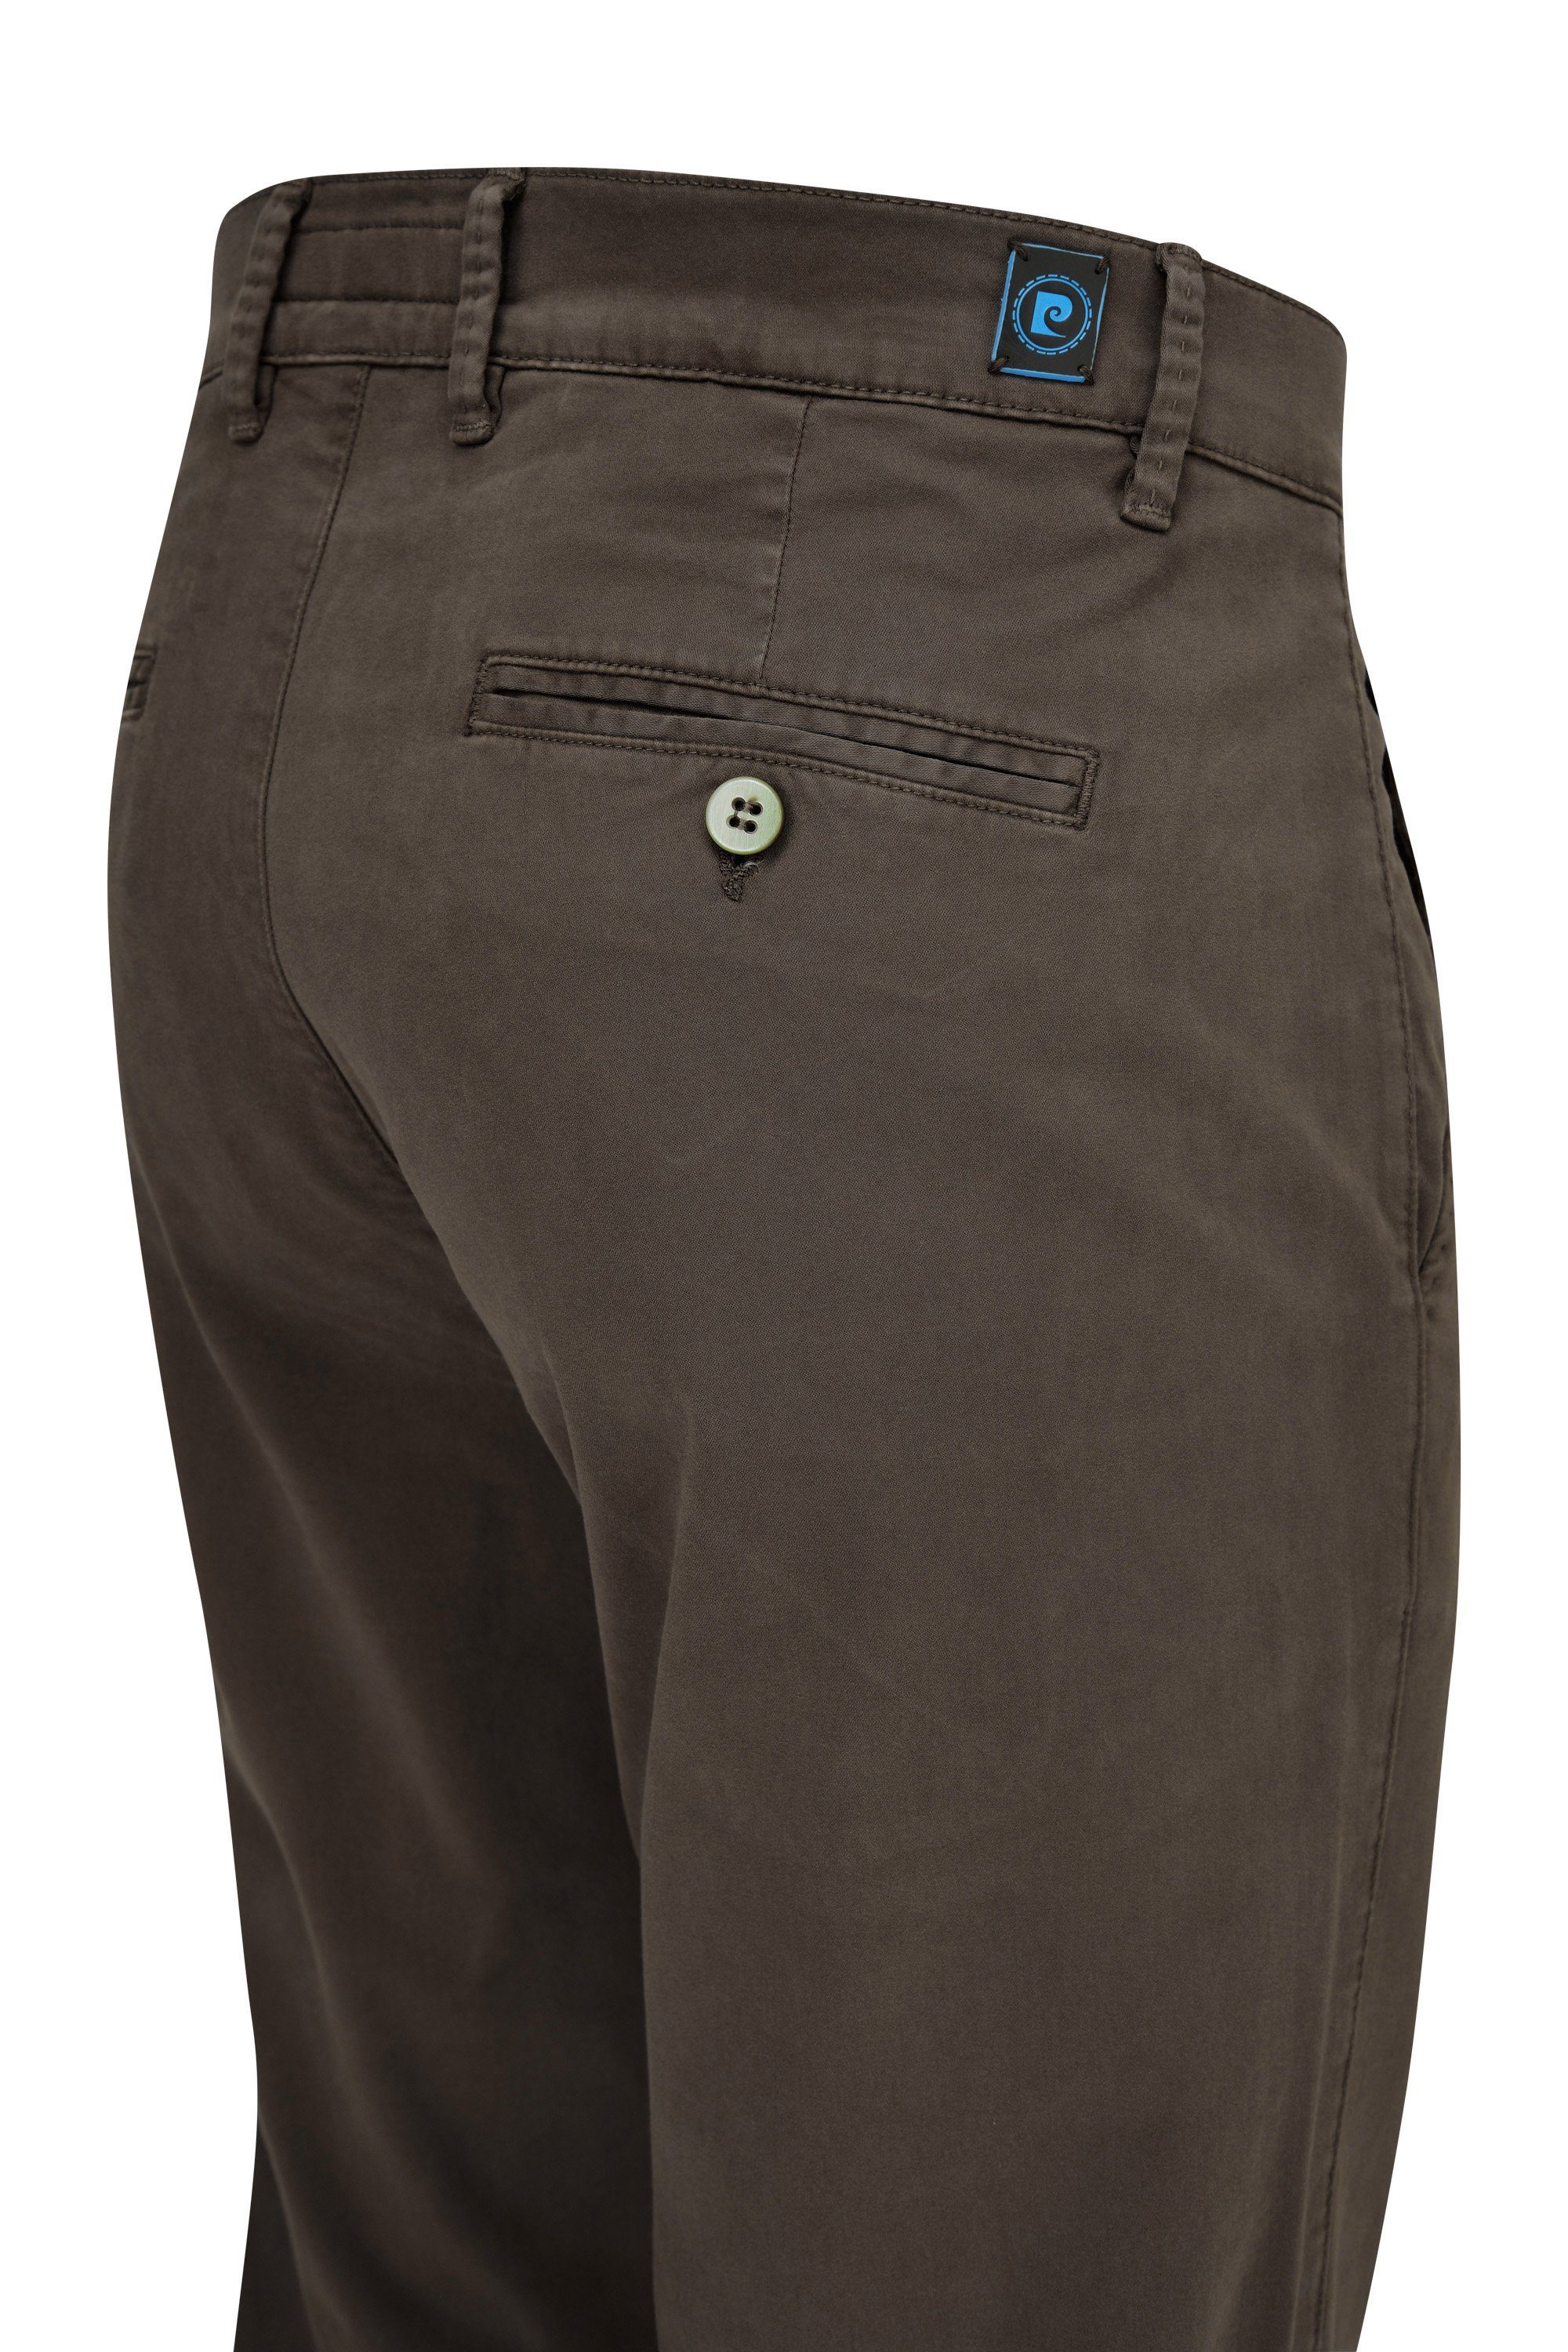 CHINO Cardin Pierre 33757 2000.39 LYON 5-Pocket-Jeans brown dark CARDIN PIERRE FUTURFLEX